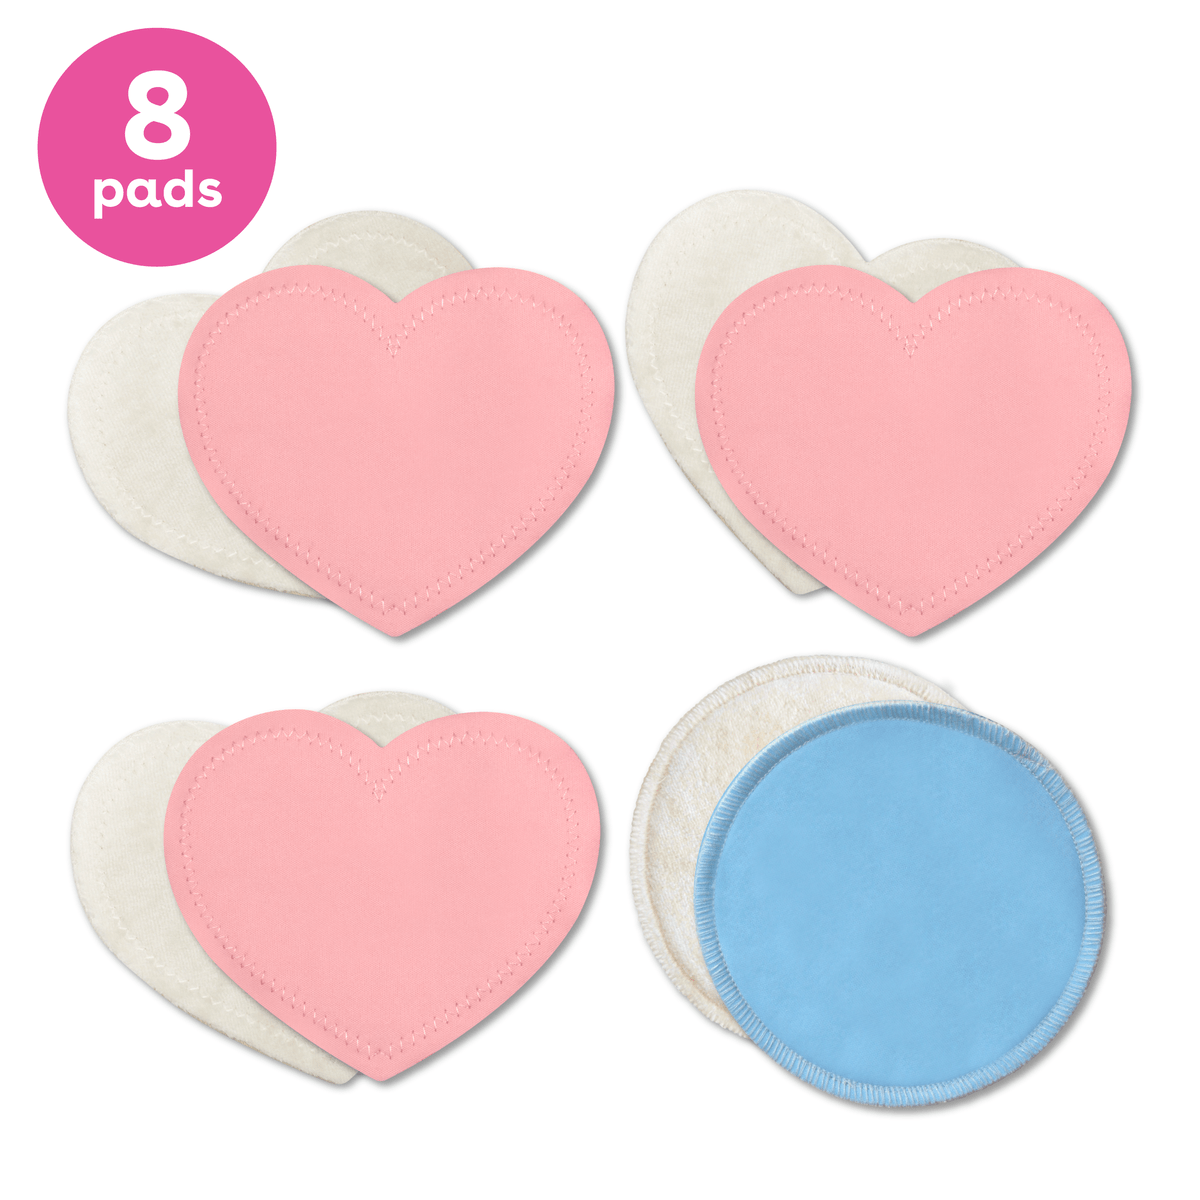 Nursing pads (3 pairs) + wash bag